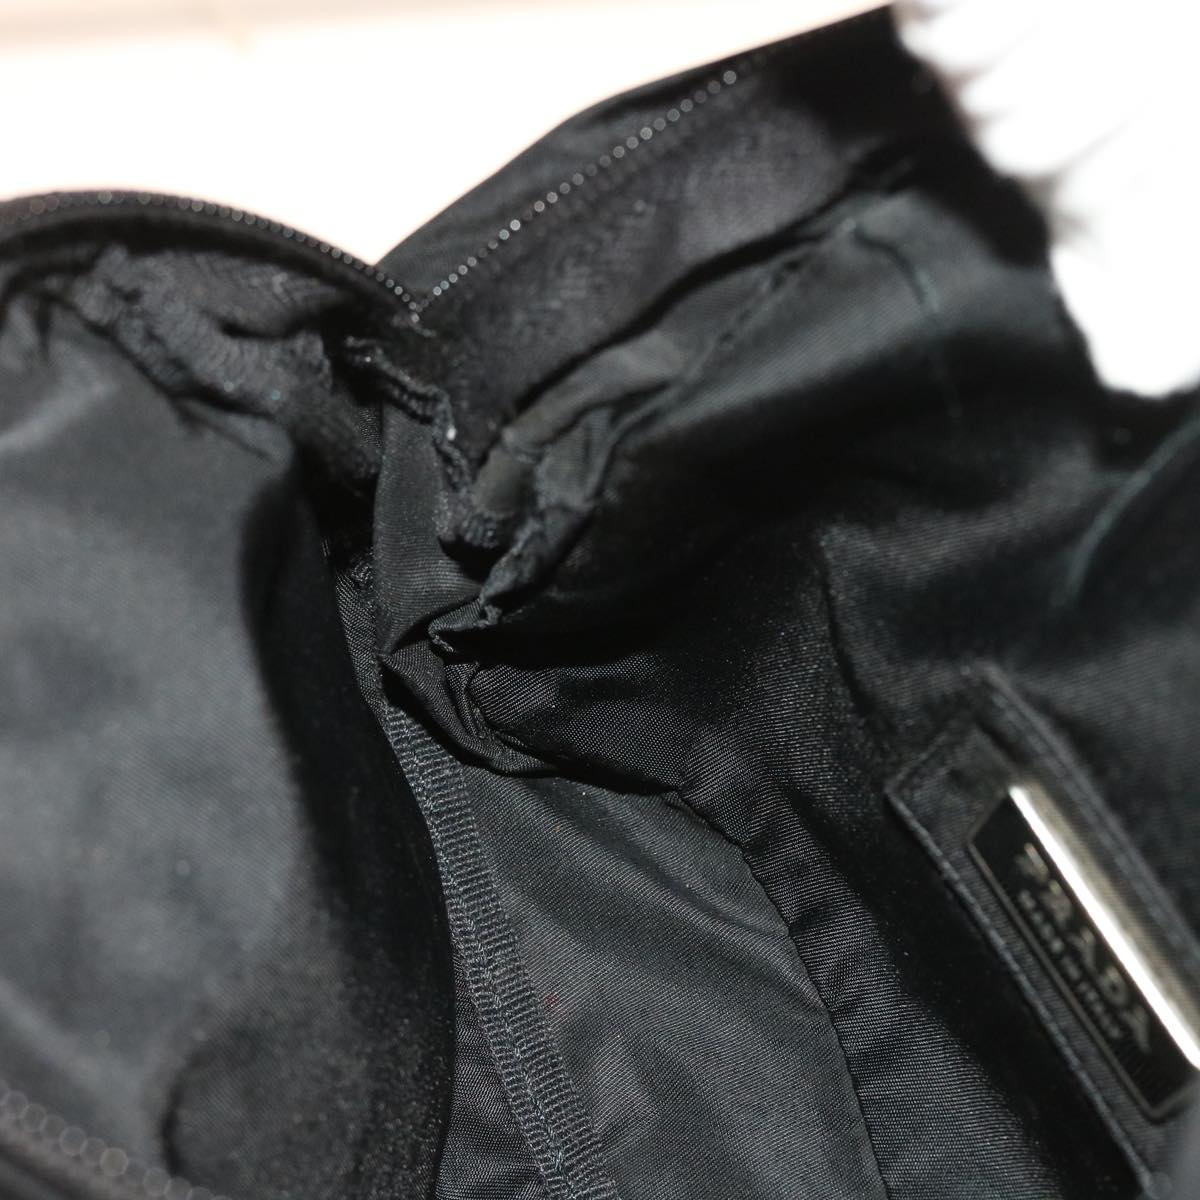 PRADA Waist bag Nylon Black Auth 57263